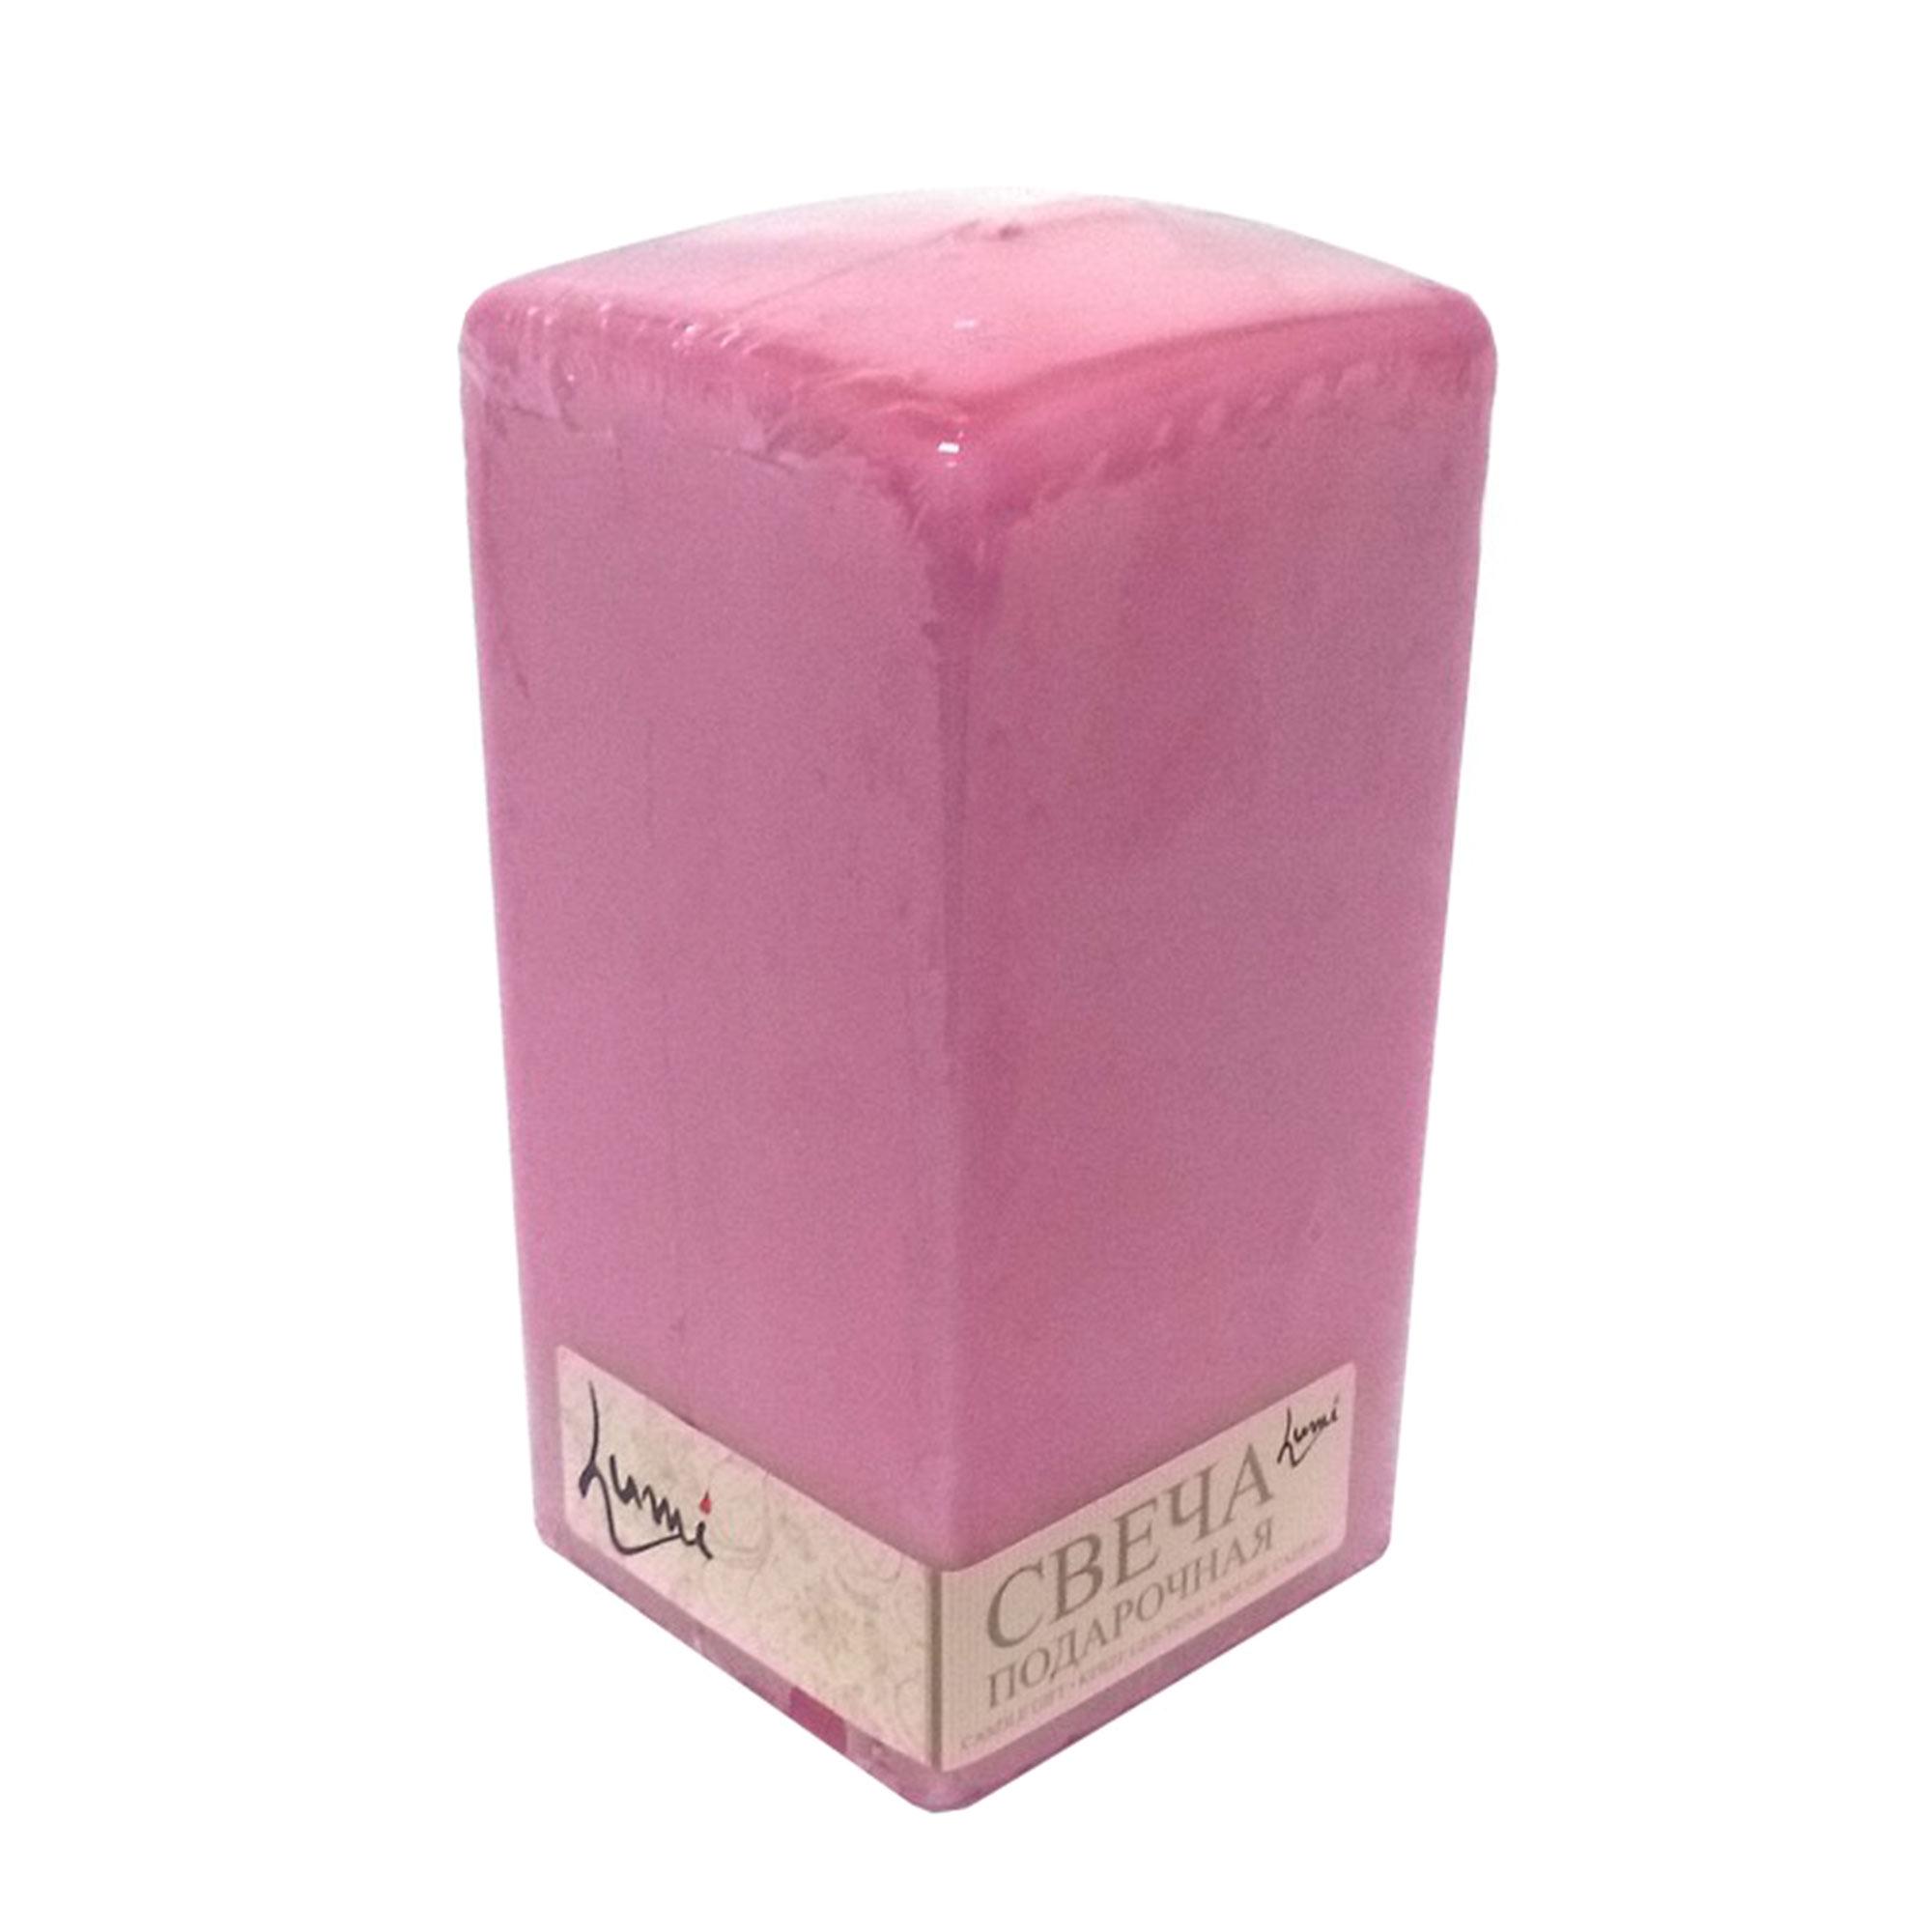 Свеча призма квадратная Lumi 6x6x15 розовая хозяйственная свеча lumi